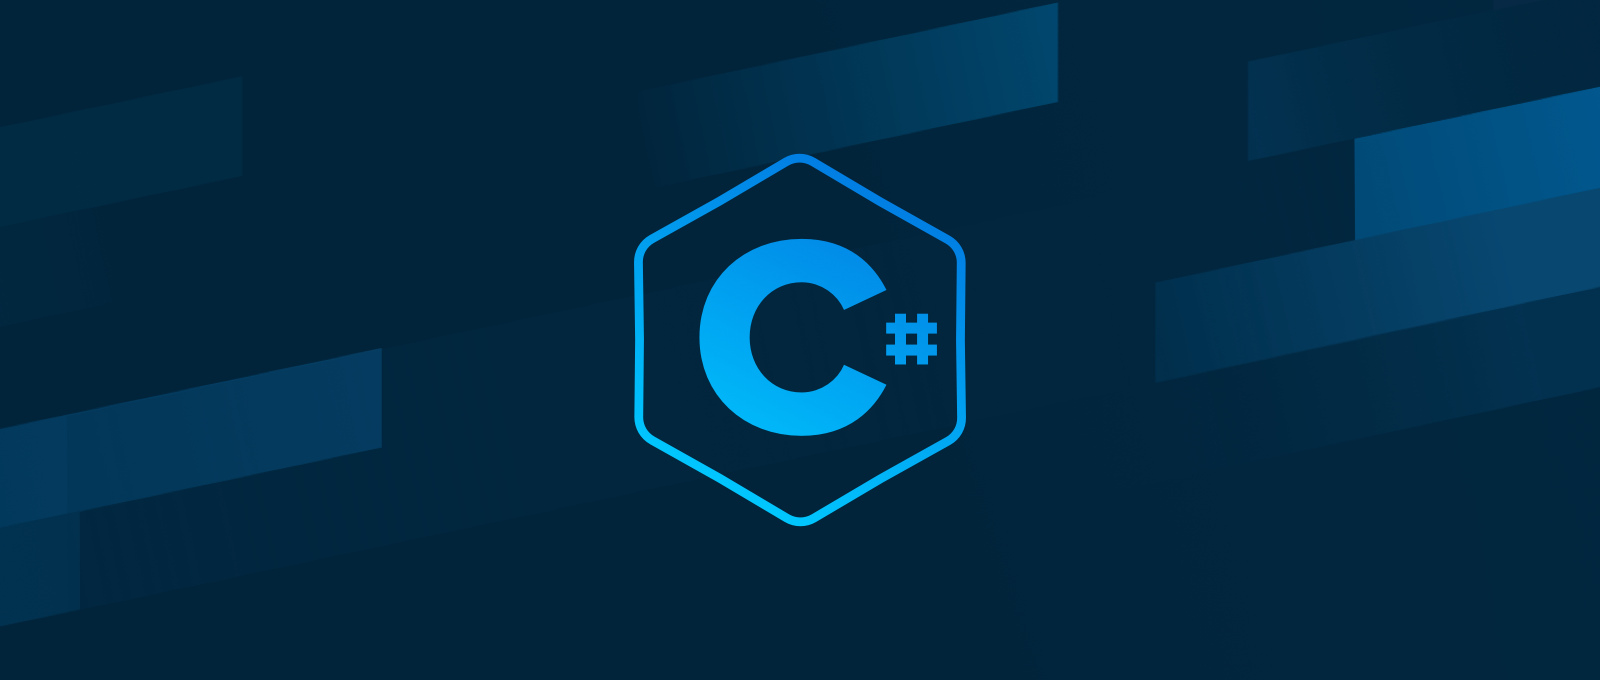 C# Logo auf dunklem Hintergrund